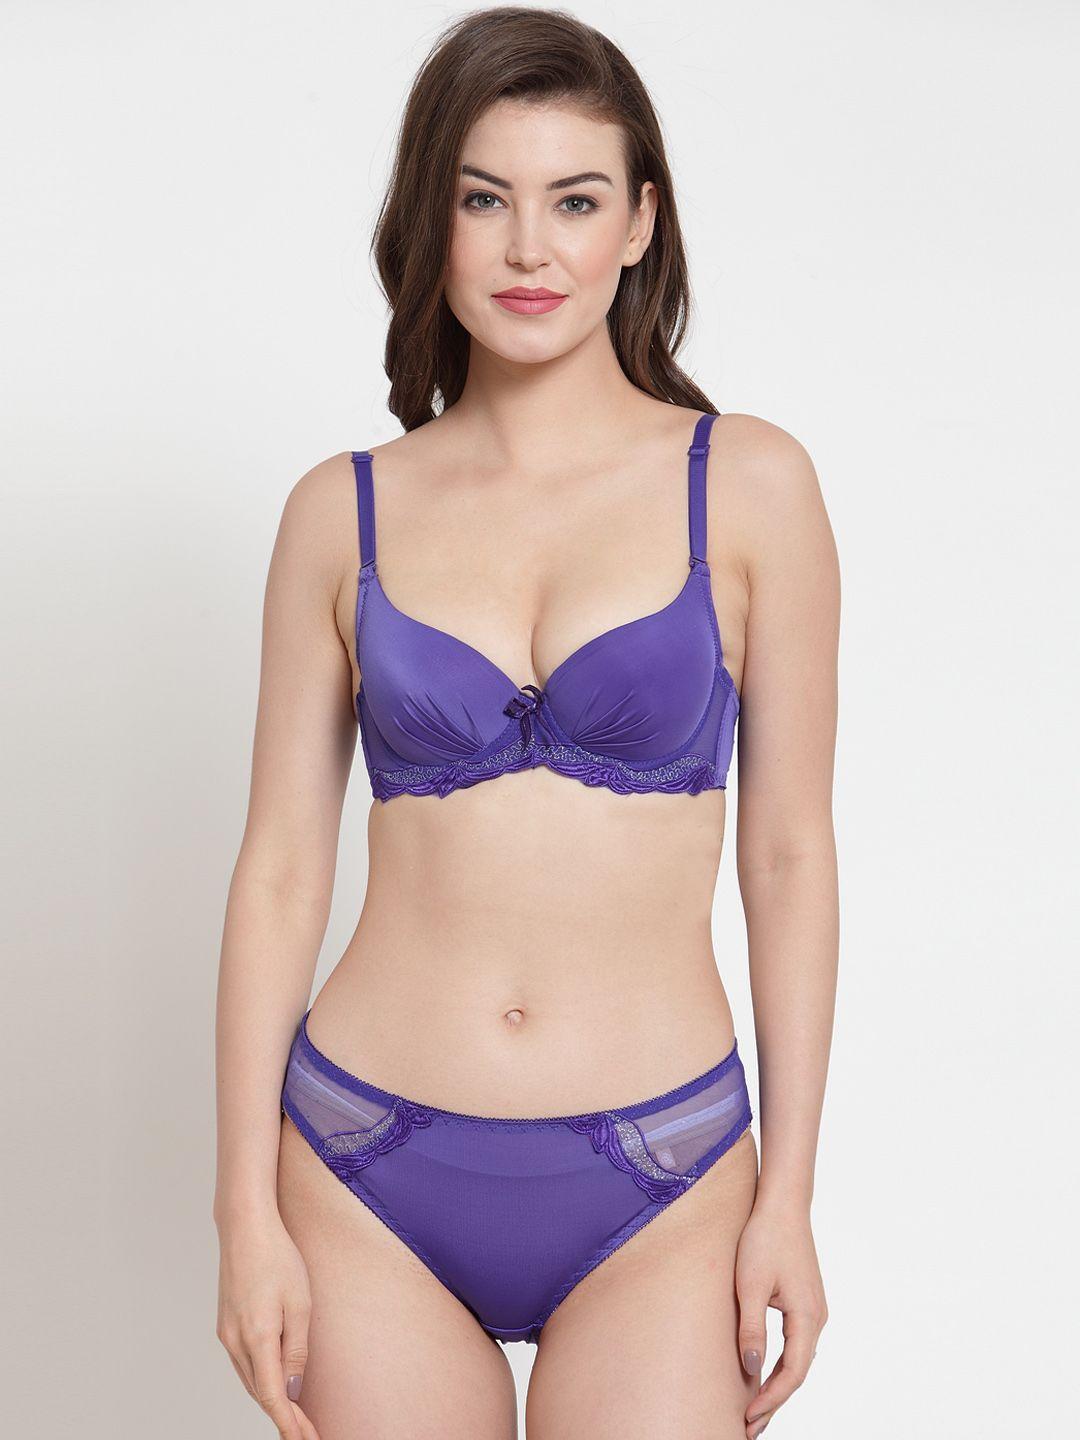 laceandme-women-purple-solid-lingerie-set-4421